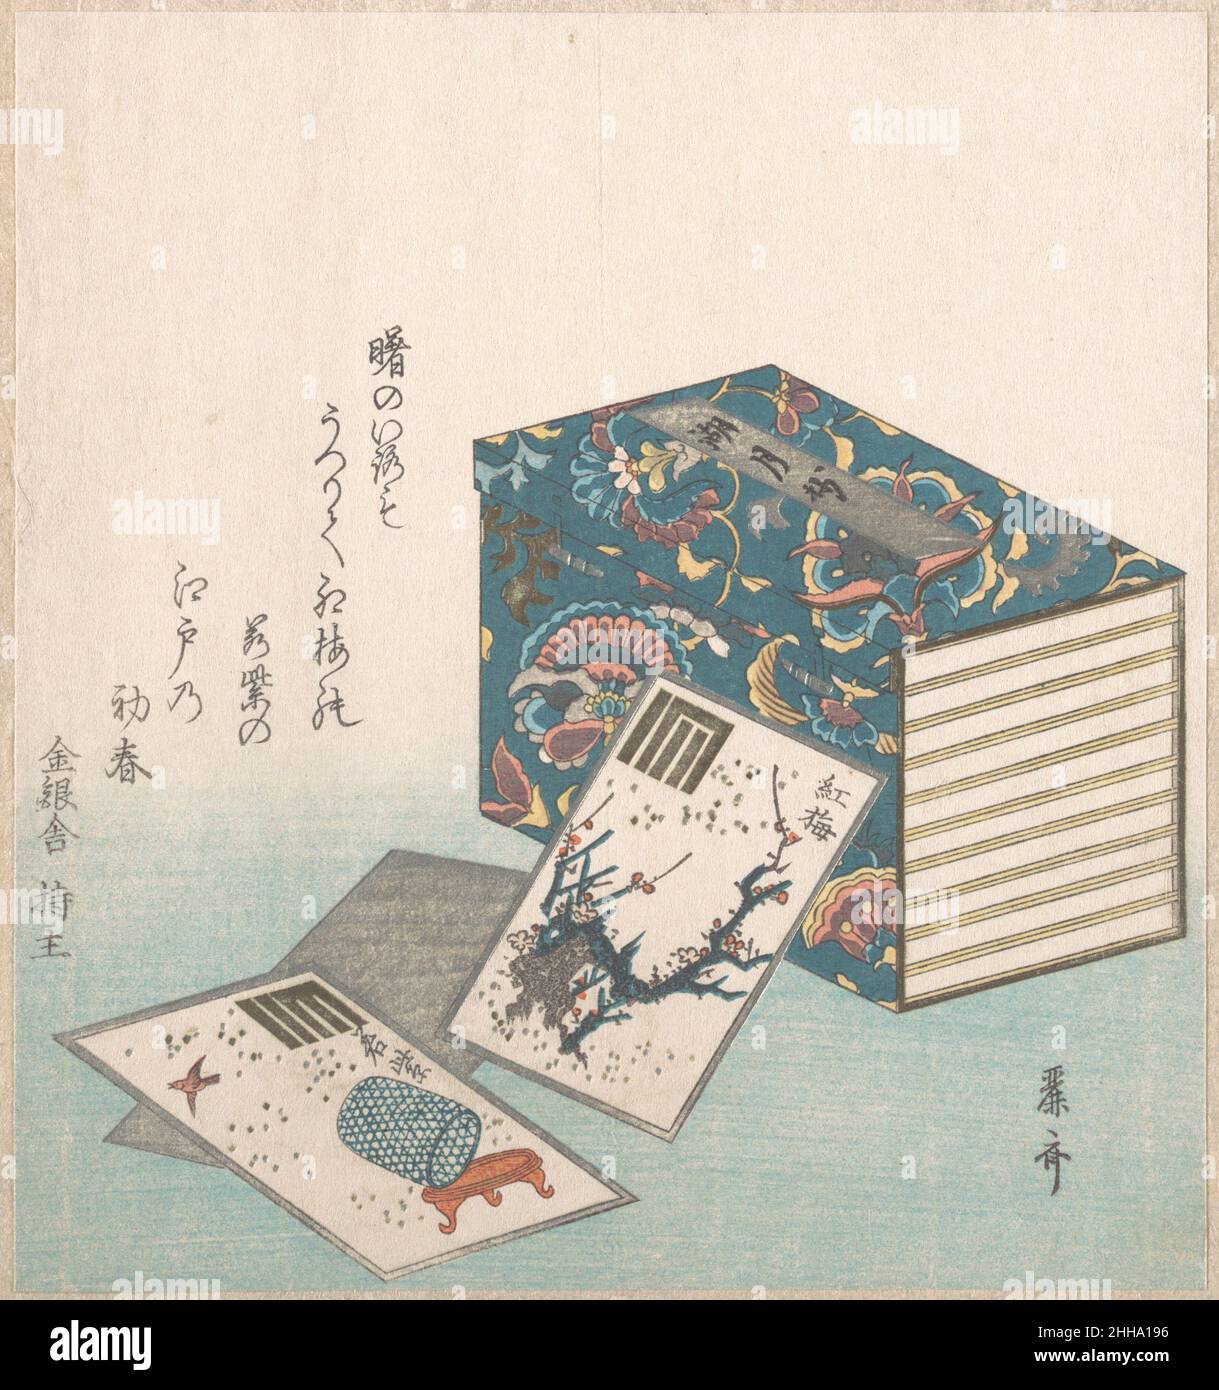 Libri e carte 18th–19th Century Reisai Japanese questo biglietto d'auguri di Capodanno in edizione limitata (surimono) ha una composizione giocosa e ricca di simboli. L'immagine mostra un insieme di libri stampati a blocchi di legno, il Kogessho, che è un'edizione annotata della racconto di Genji pubblicata intorno al 1673. Accanto ad esso, carte da gioco sparse raffigurano due capitoli dalla racconto di Genji: Il Kobai (susina di rosa) e il Wakamurasaki (lavanda), entrambi illustrati con non solo le loro consuete rappresentazioni pittoriche, ma anche 'Genji-creste' (Genji-mon). I due capitoli sono legati alla cultura dell'incenso e alla cresta genji Foto Stock